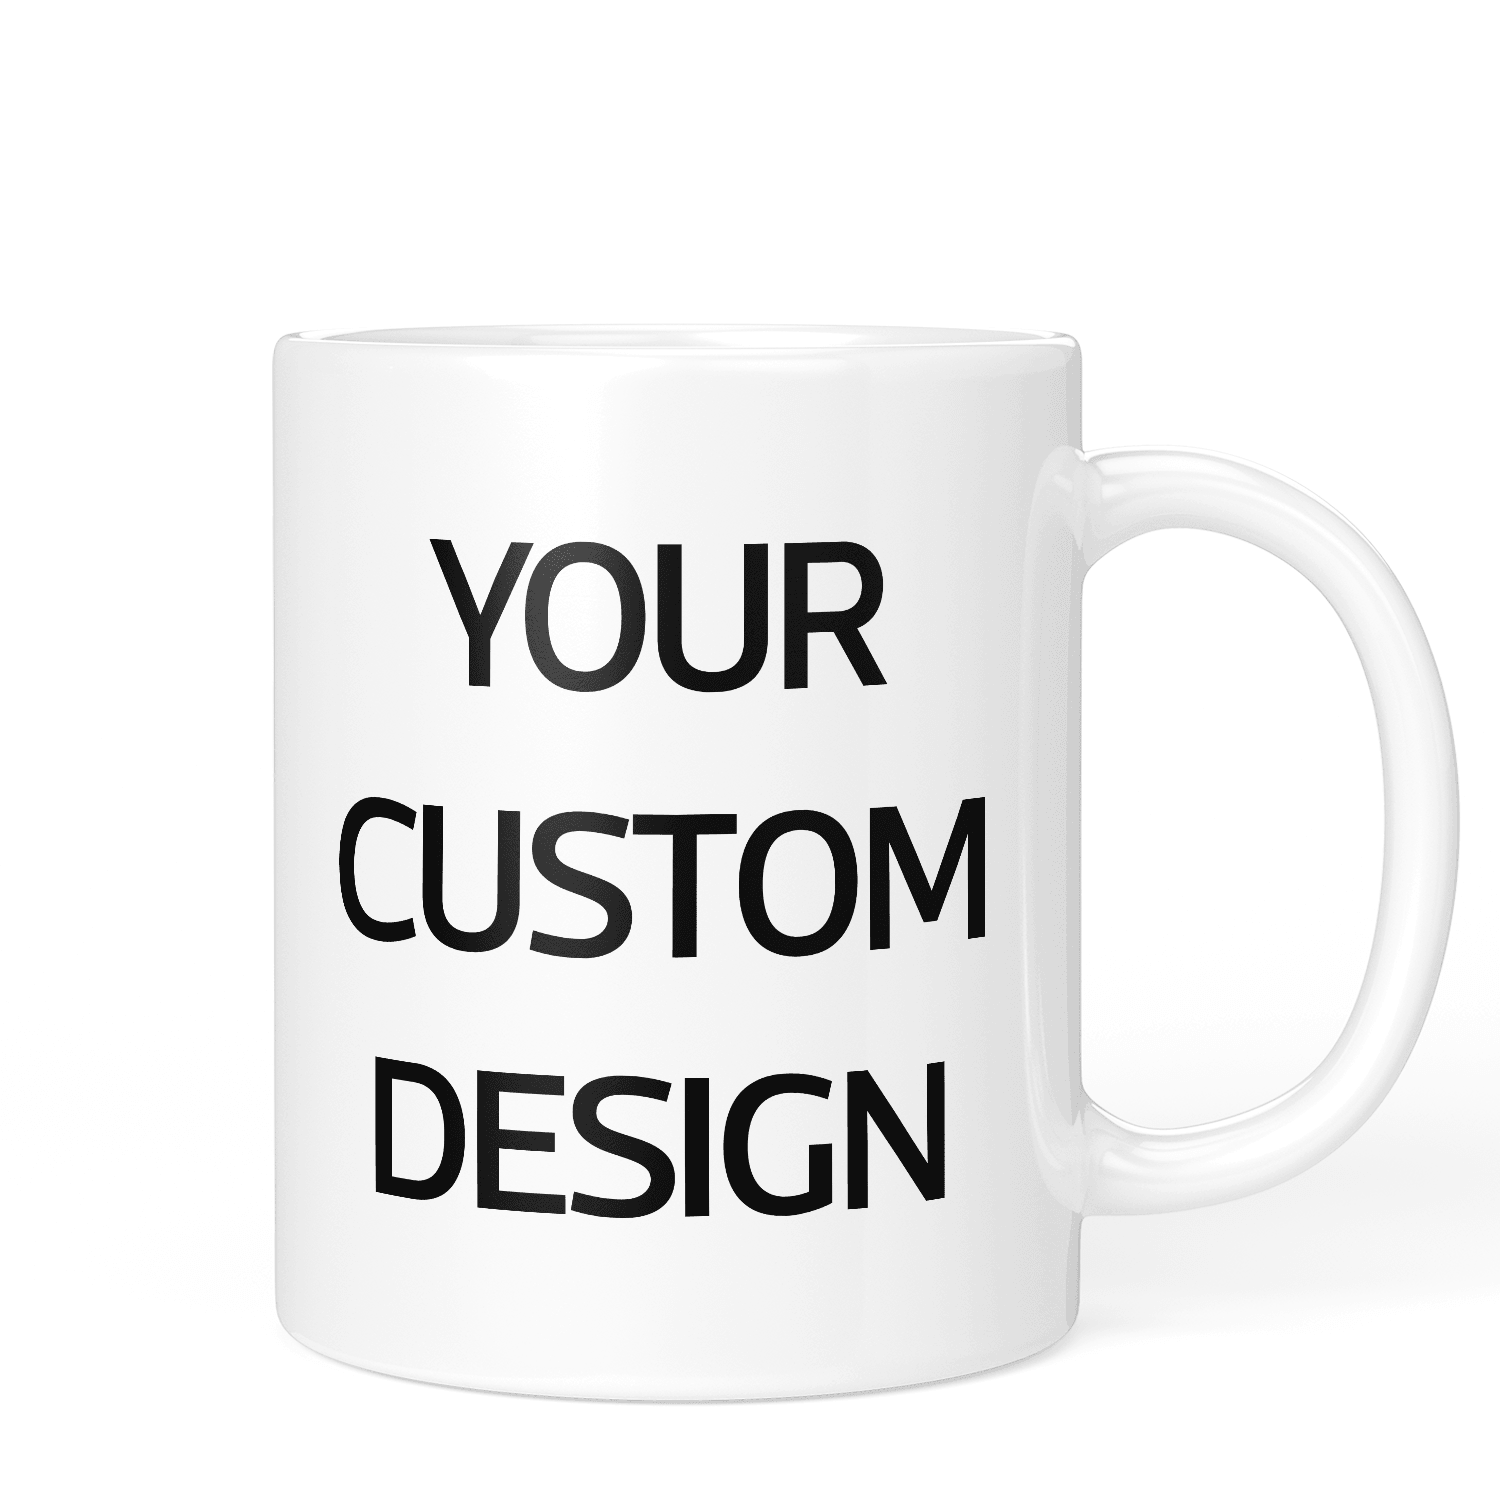 Create Your Own Mug! - Printibly